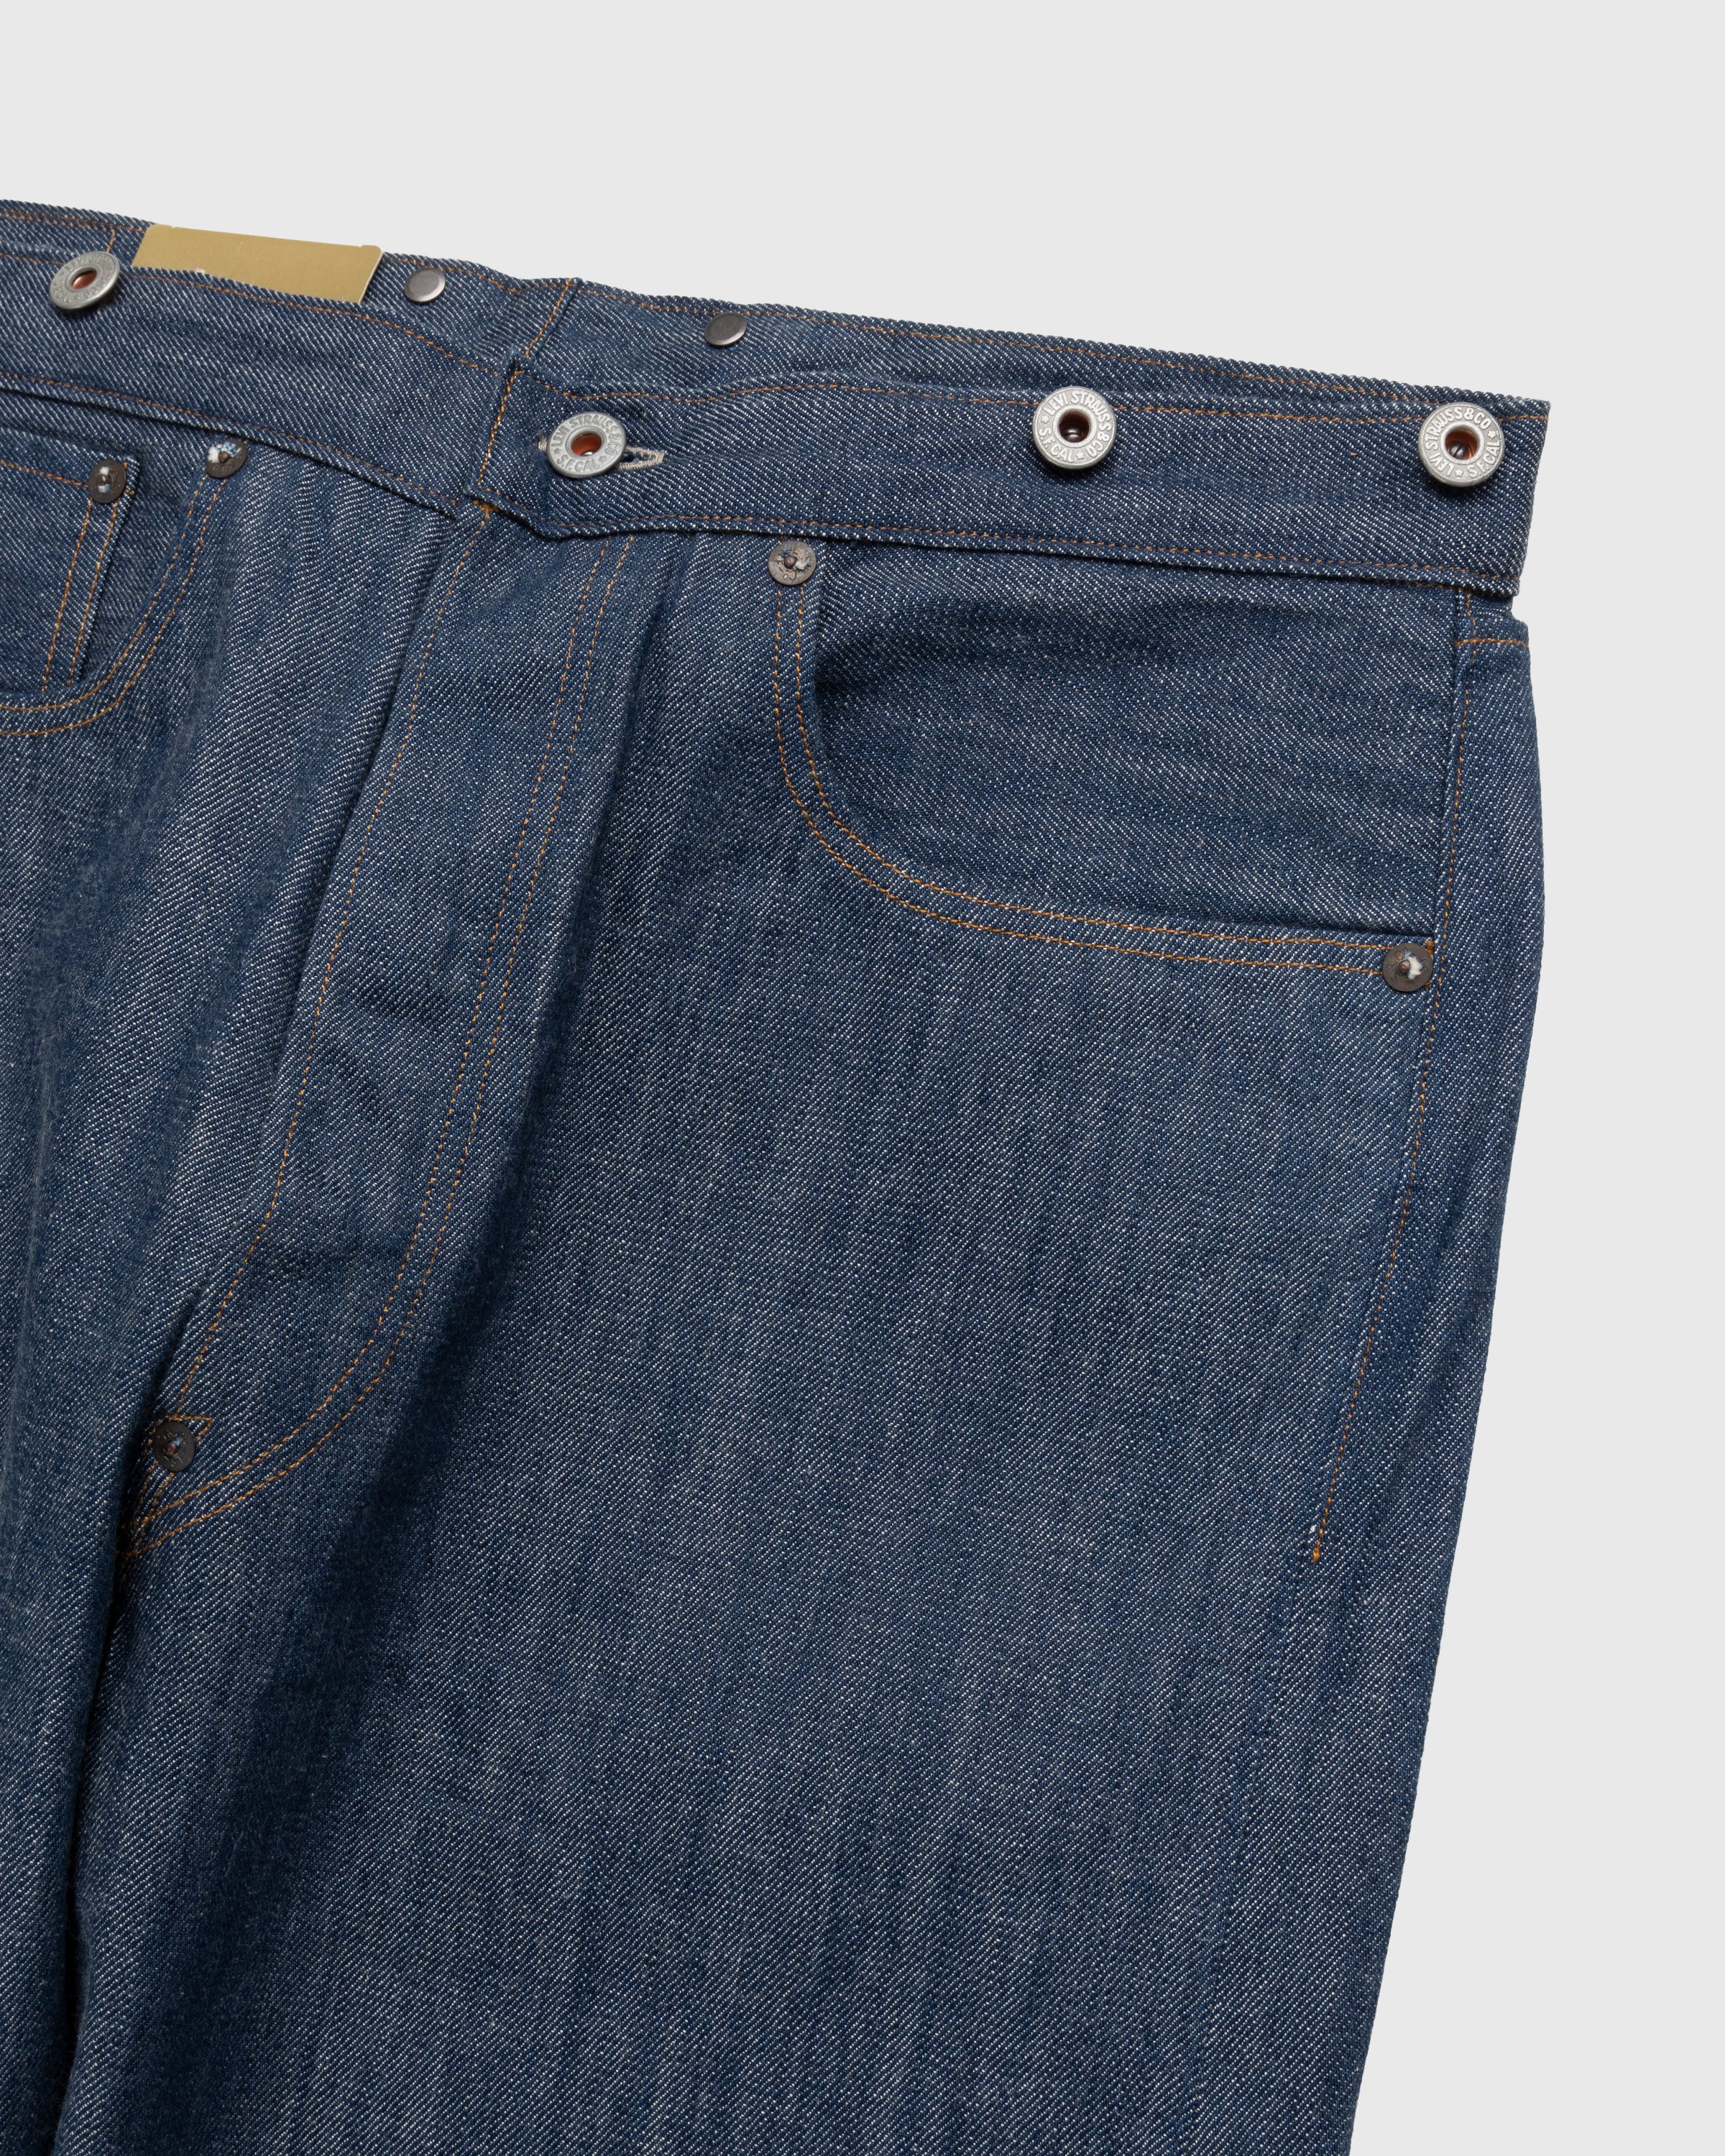 Levi's - 1890 501 Jeans Dark Indigo Flat Finish - Clothing - Blue - Image 6